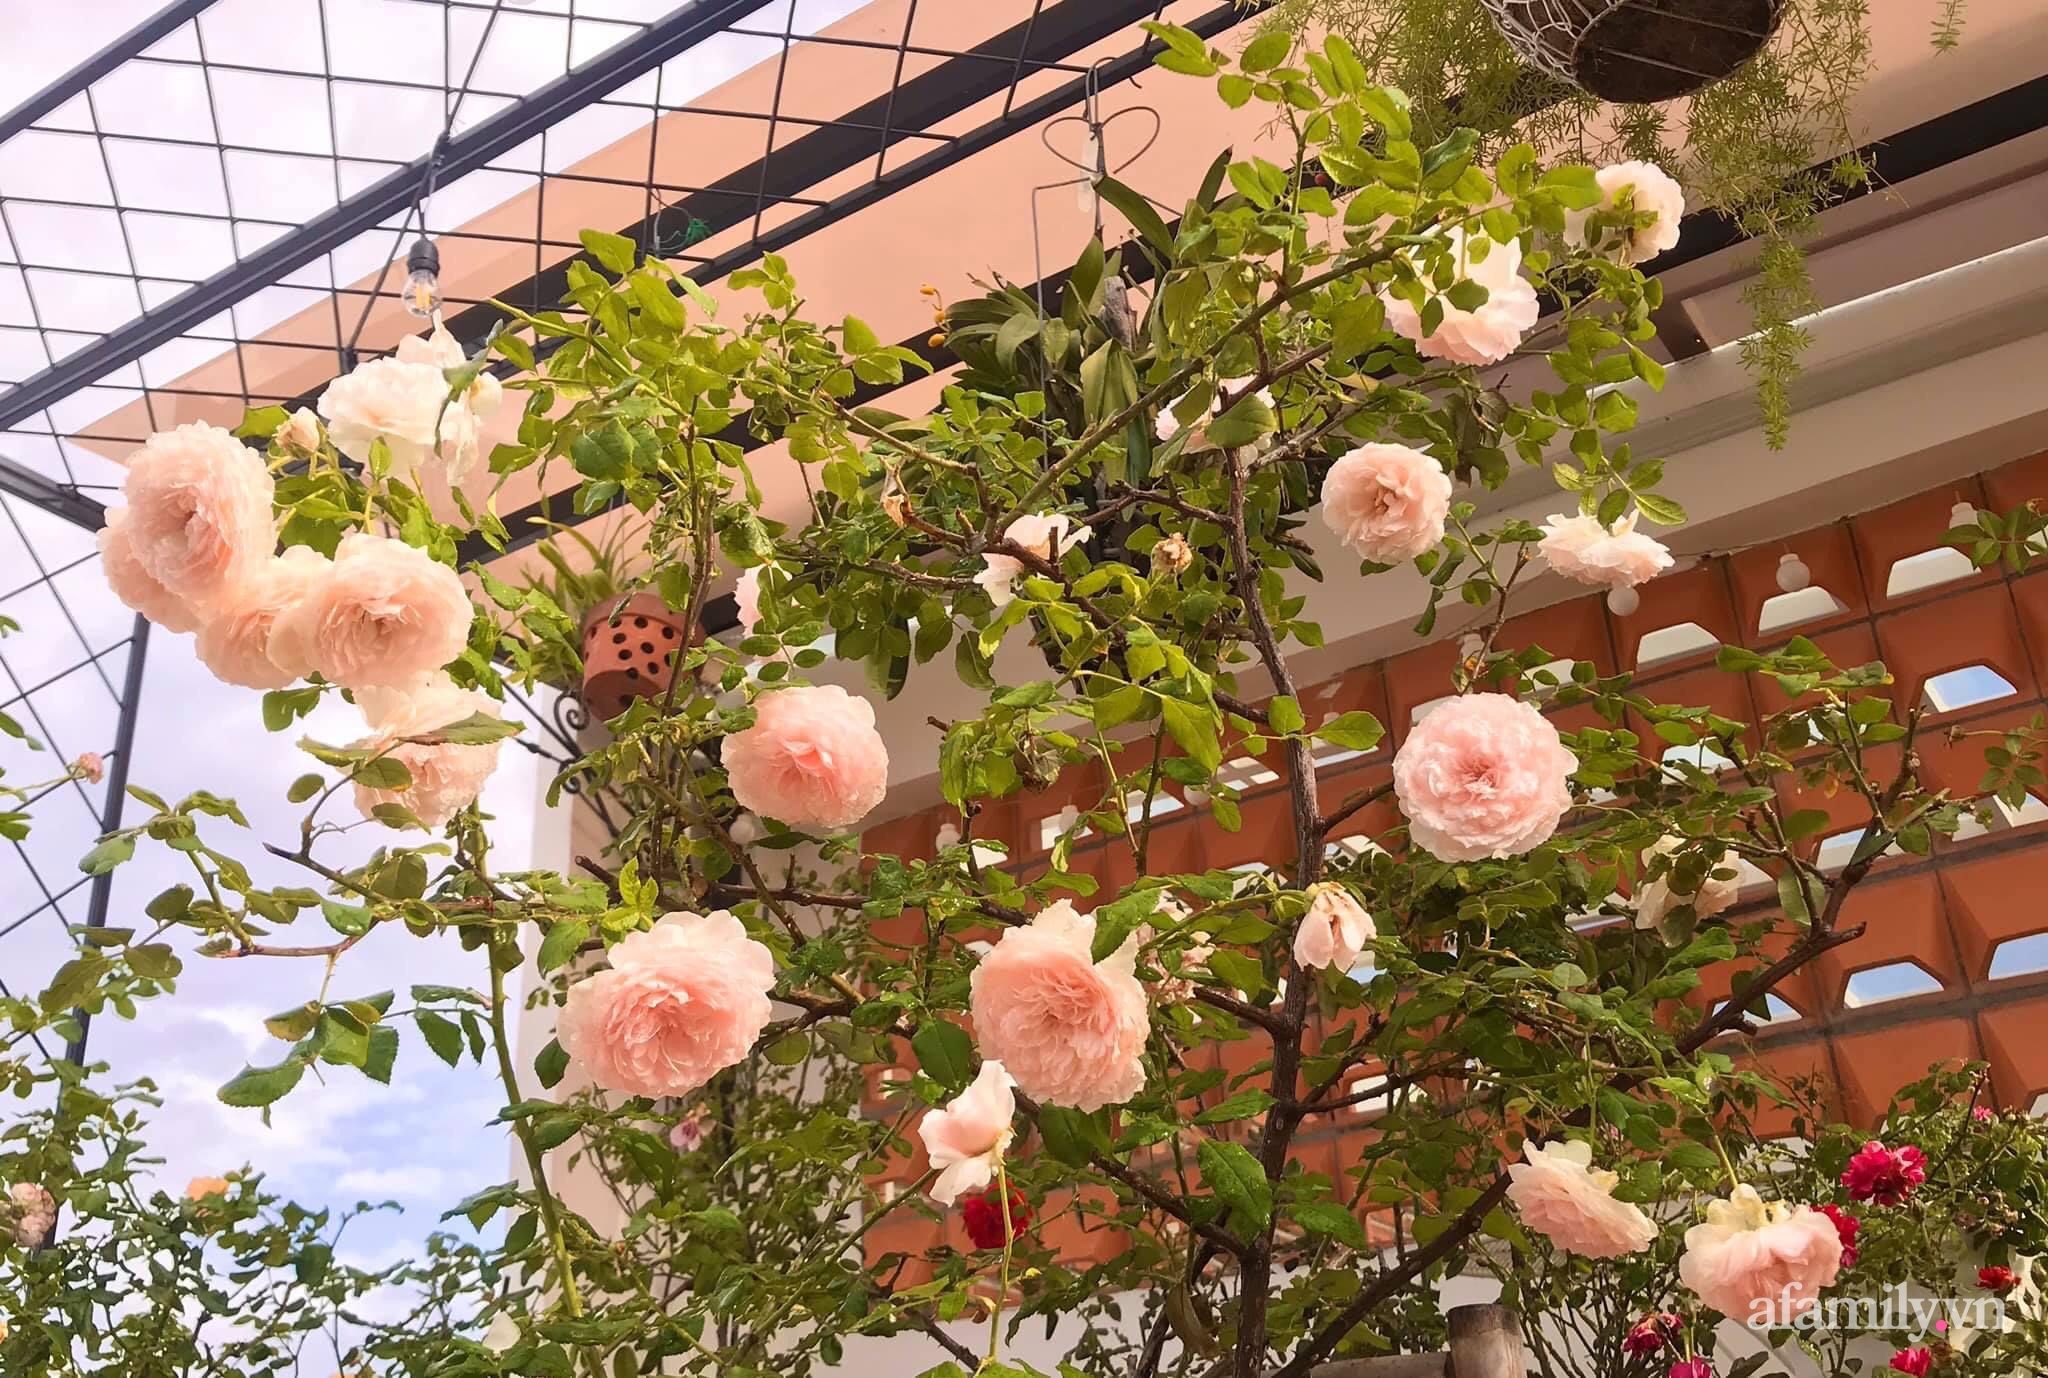 Ngày 20/11 ghé thăm vườn hồng ngát hương dịu dàng khoe sắc trên sân thượng của cô giáo dạy Văn ở Nha Trang - Ảnh 19.